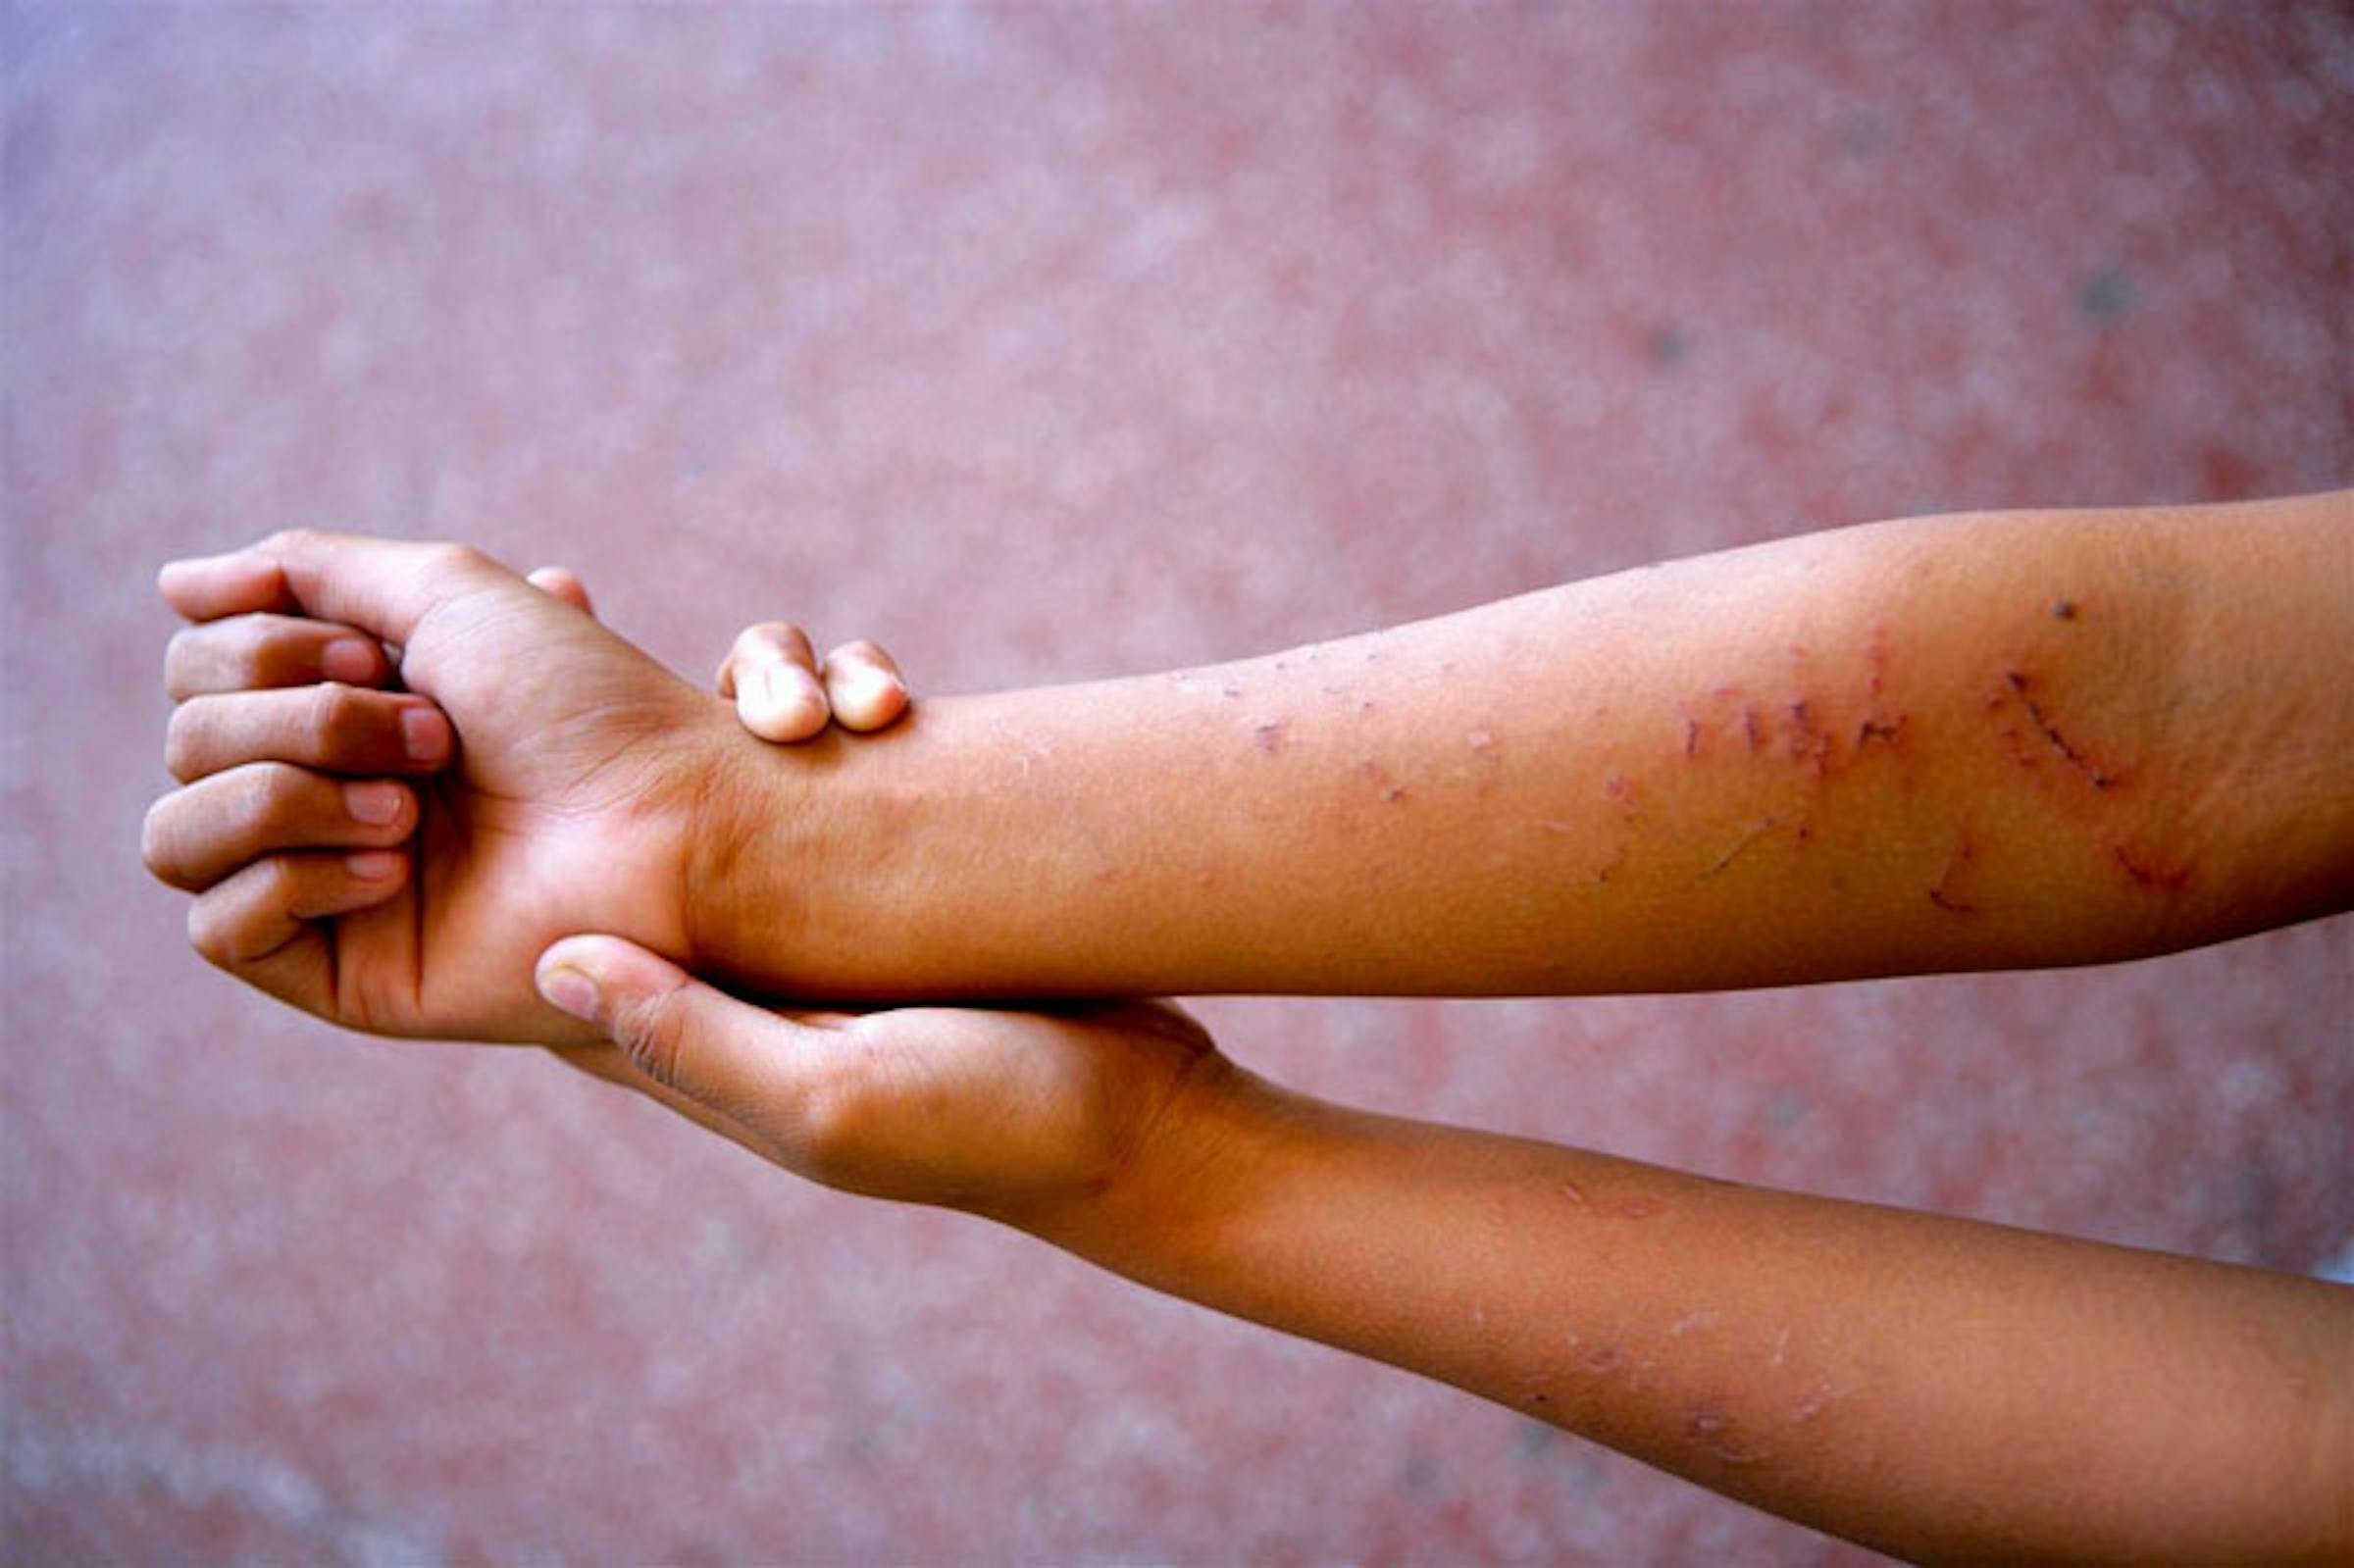 Segni di violenza sulle braccia di questa ragazza di 16 anni, seviziata in famiglia a Manila (Filippine) - ©UNICEF/NYHQ2013-2378/Giacomo Pirozzi 